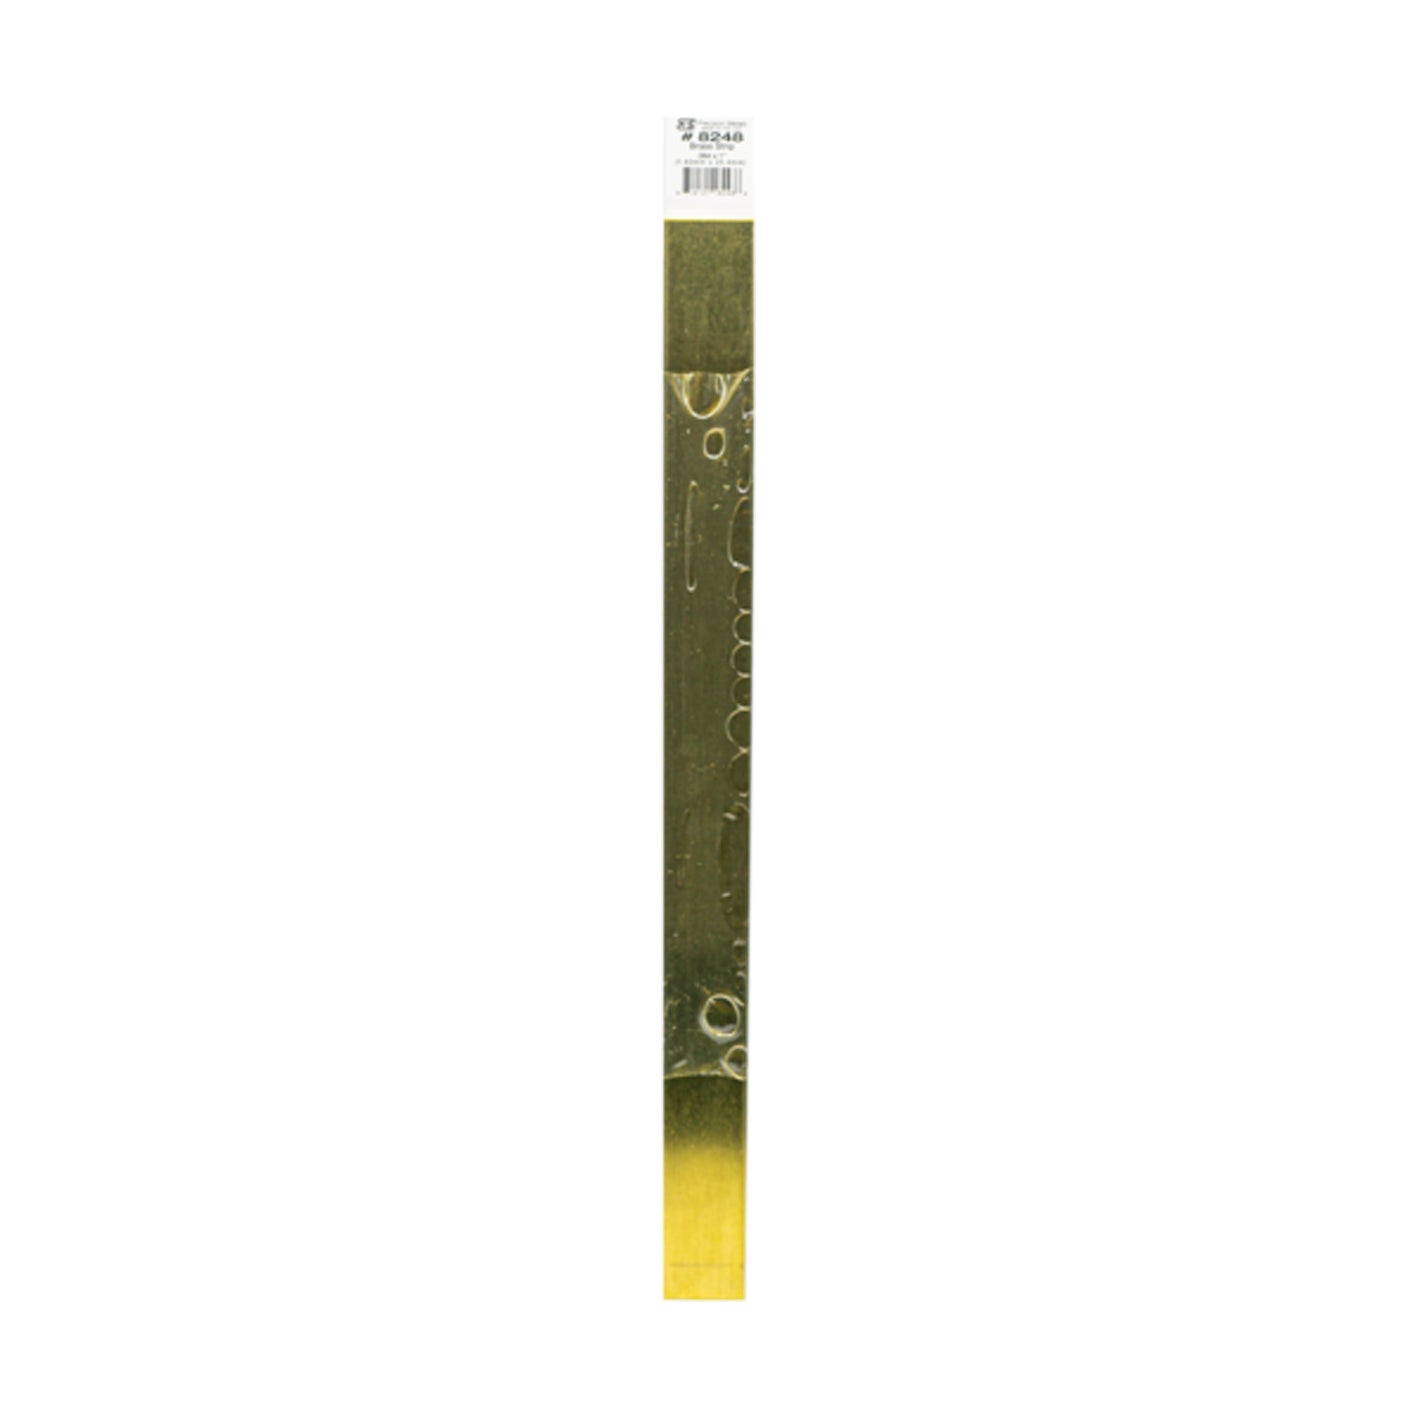 K&S™ Brass Strip: 0.064" Thick x 1" Wide x 12" Long (1 Piece)